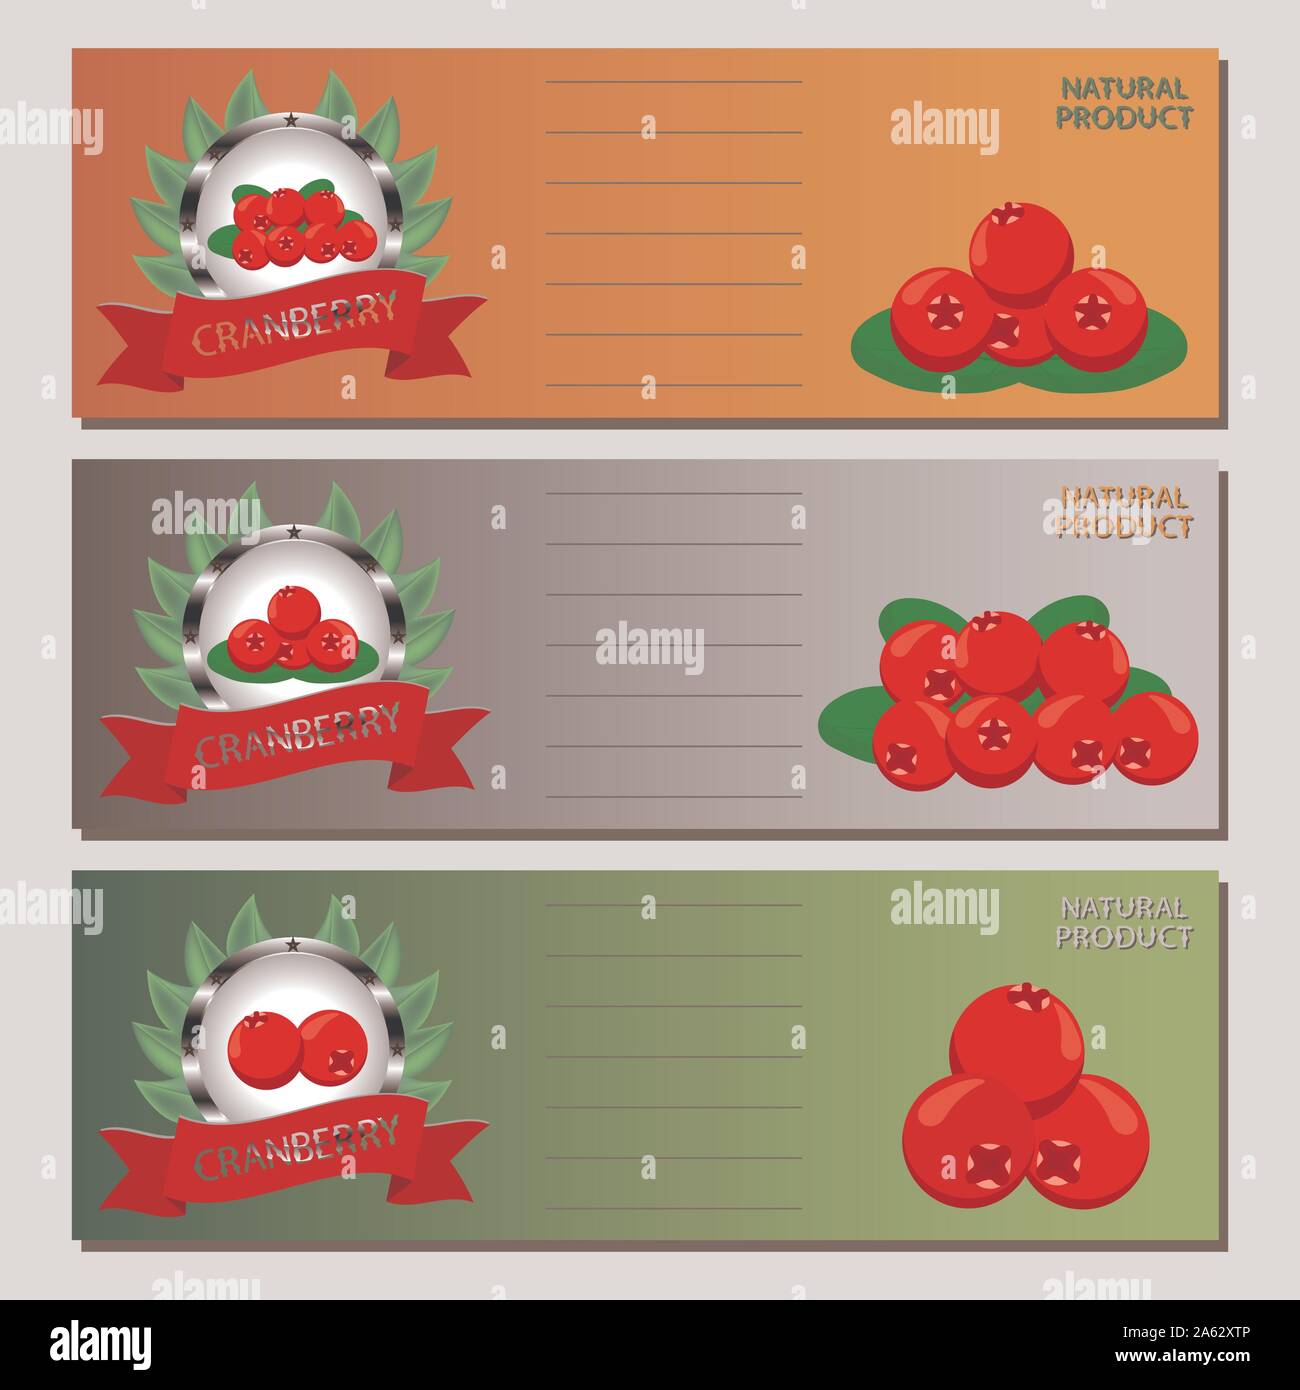 Abstract vector illustration icône logo pour ensemble de petits fruits mûrs, de canneberge rouge feuille verte sur fond de fruits. Cranberry est constituée de label natur Illustration de Vecteur